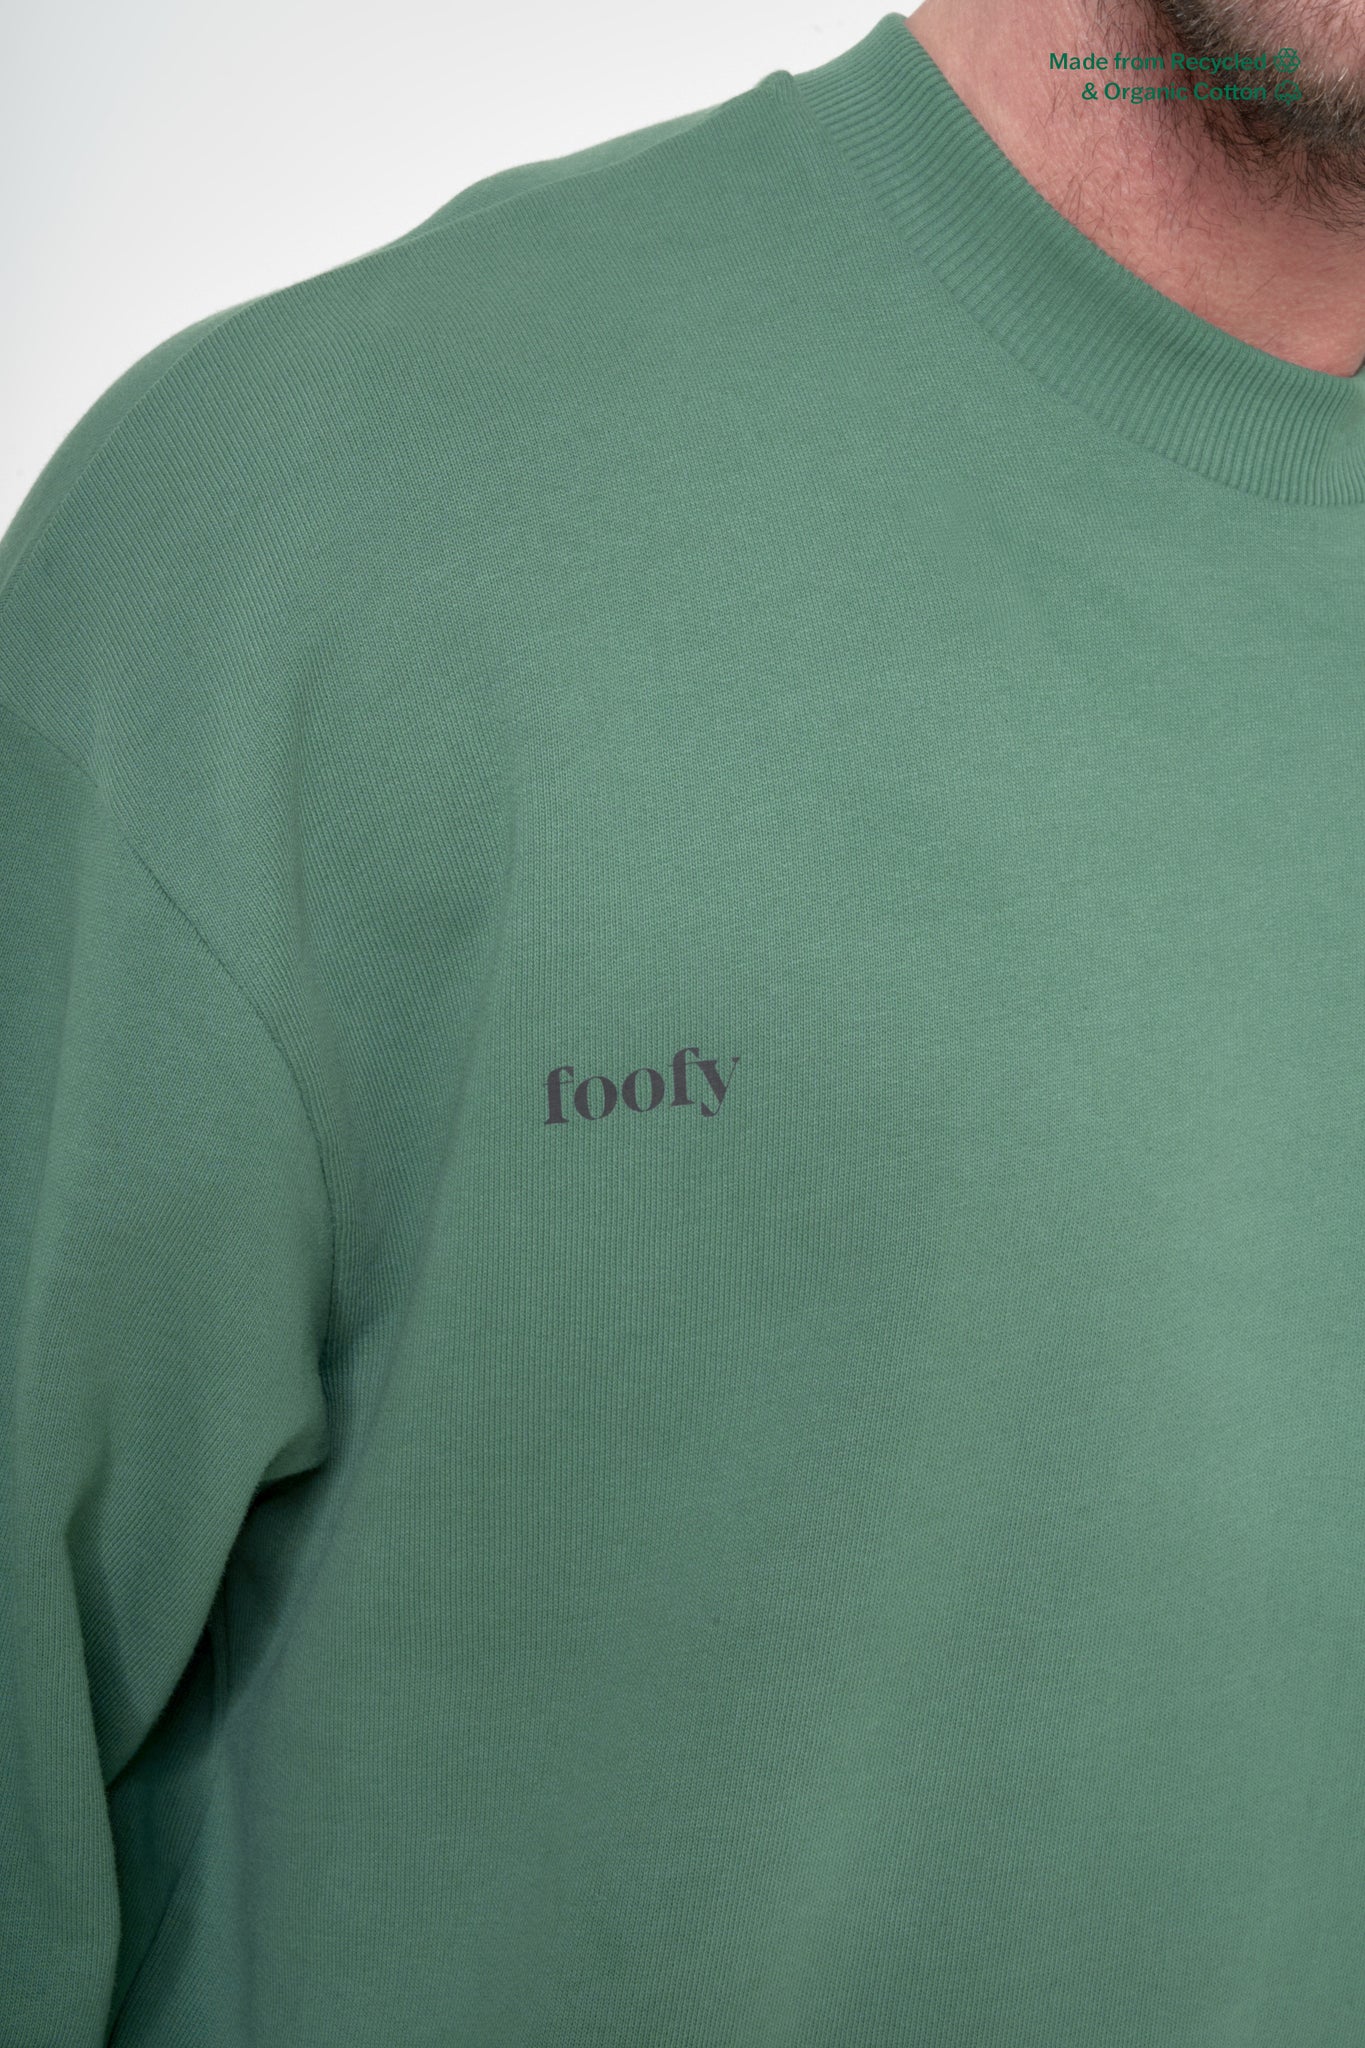 Foofy Sweatshirt For Men